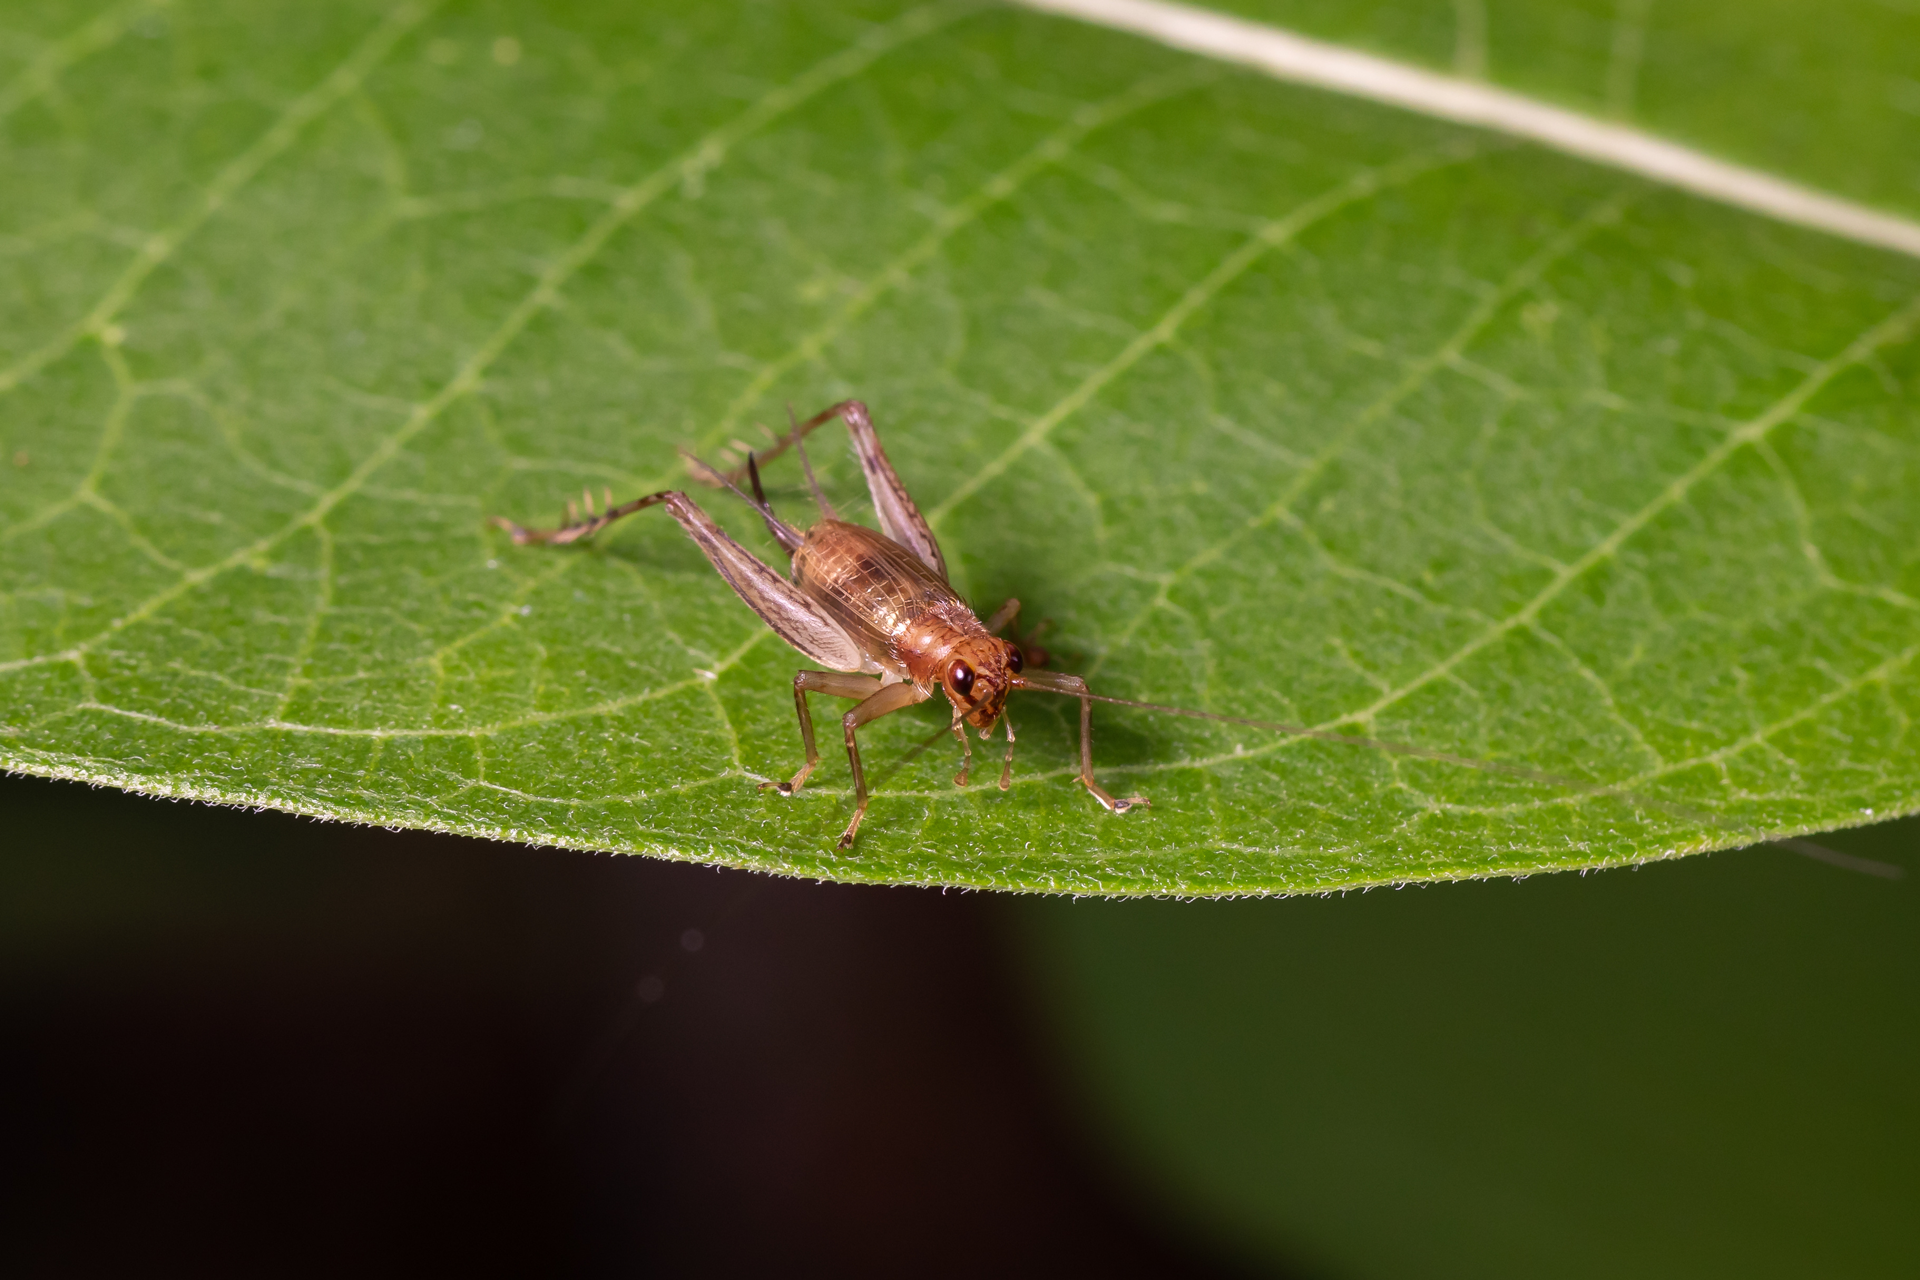 cricket-on-green-leaf